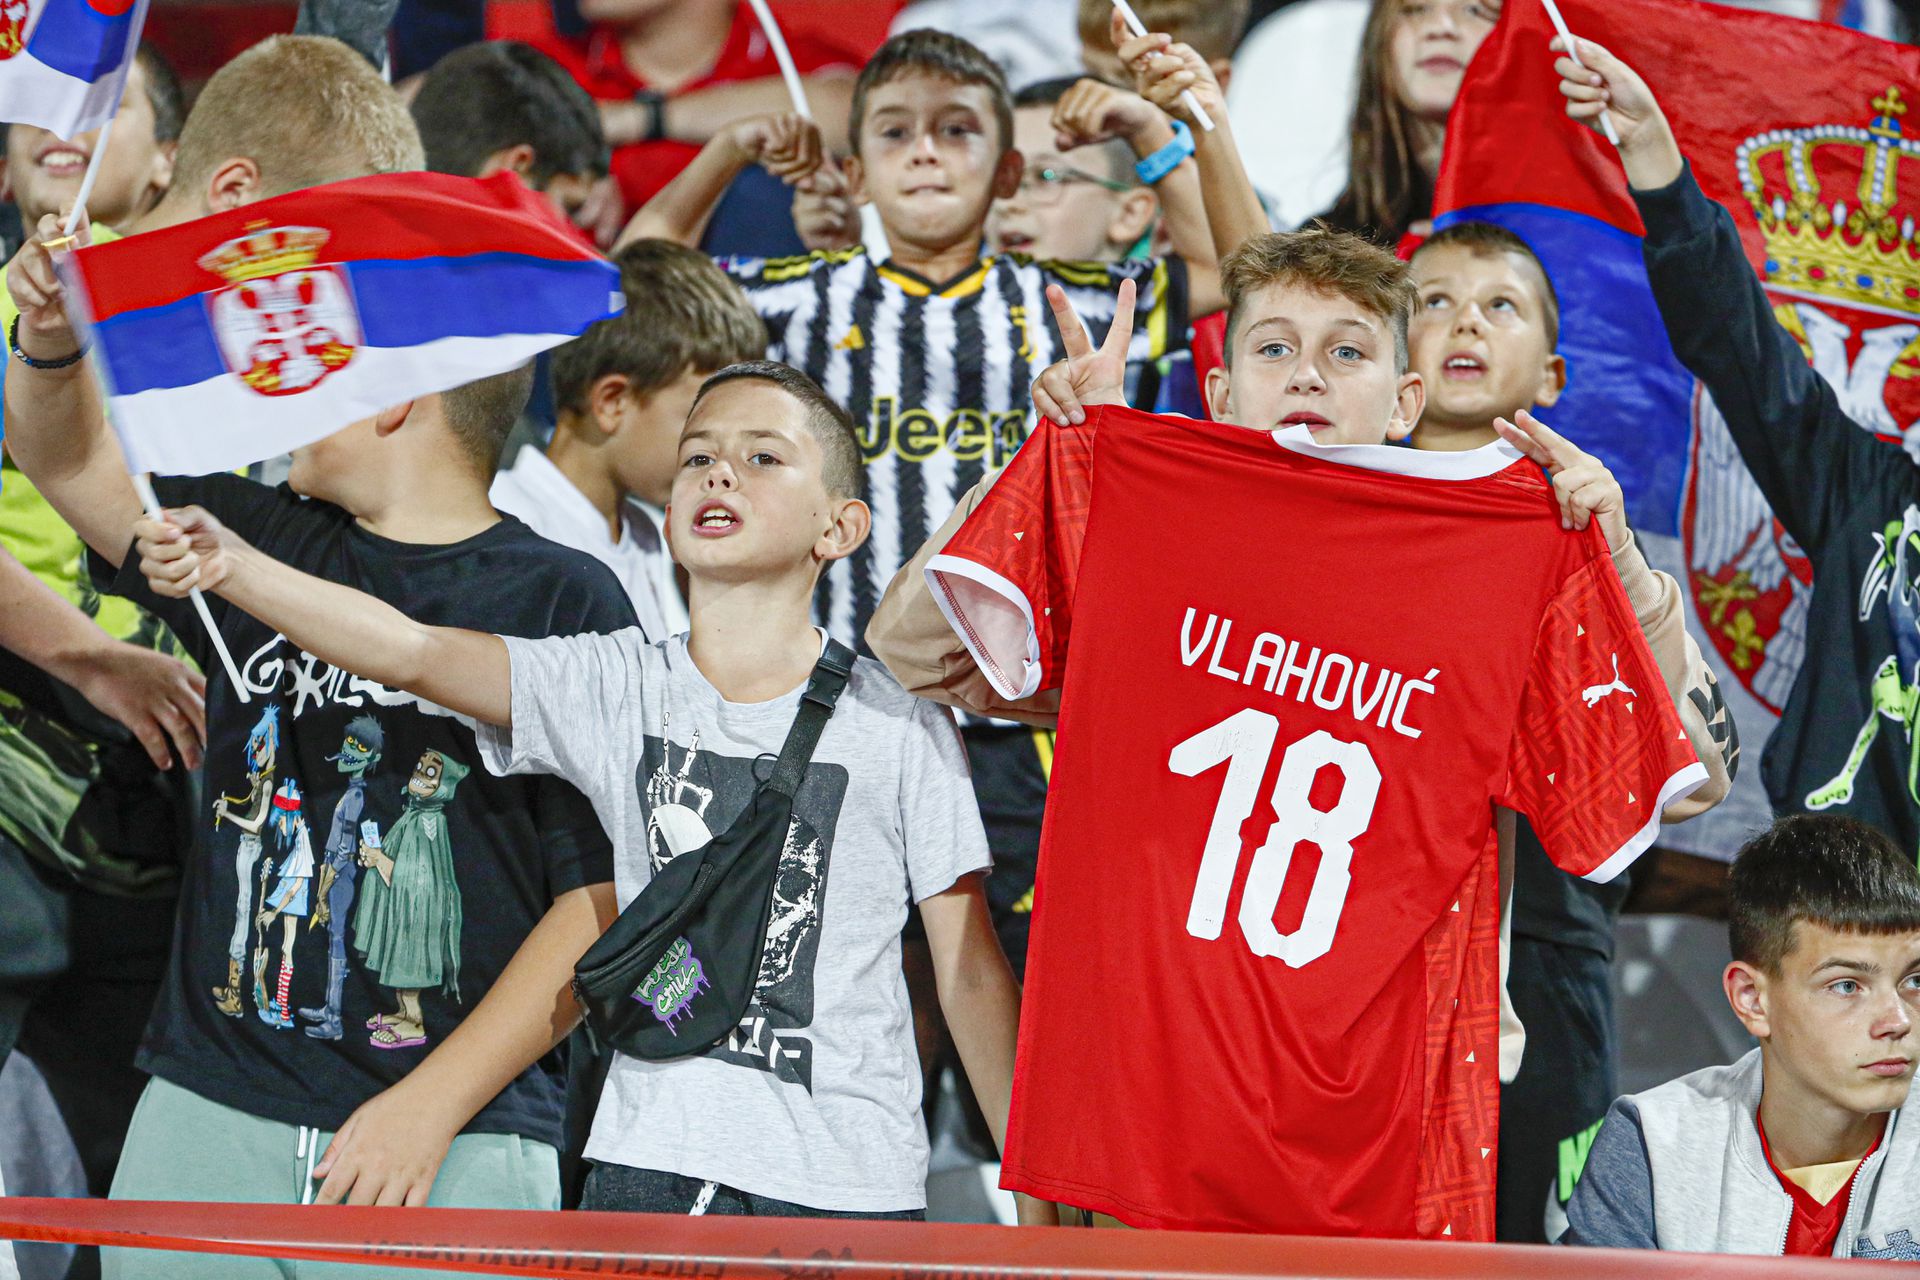 A mérkőzésre bebocsátást nyerő szerb gyerekek megállás nélkül fújták a vuvuzelát Fotó: Fuszek Gábor